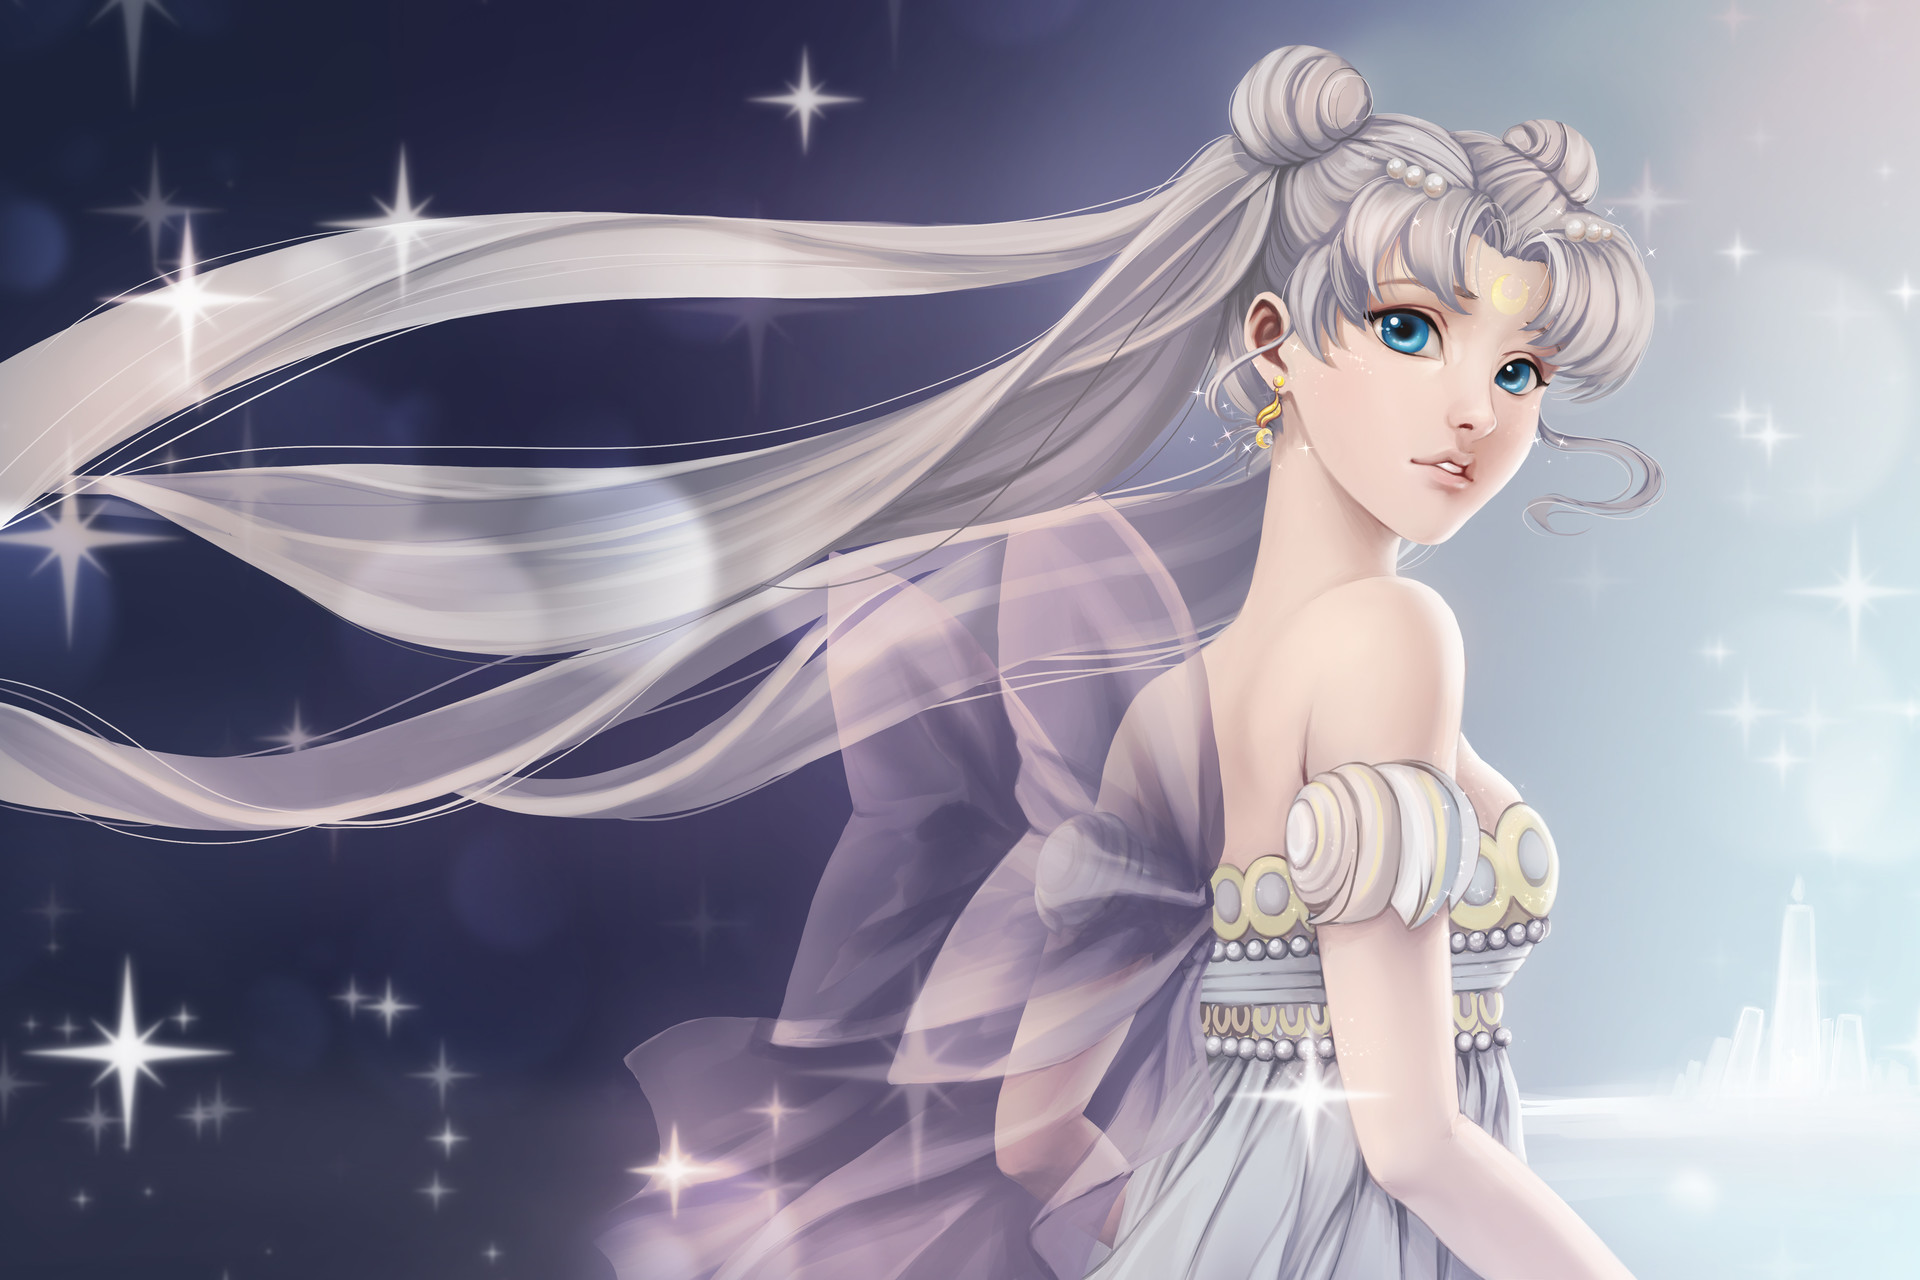 ArtStation - Princess Serenity